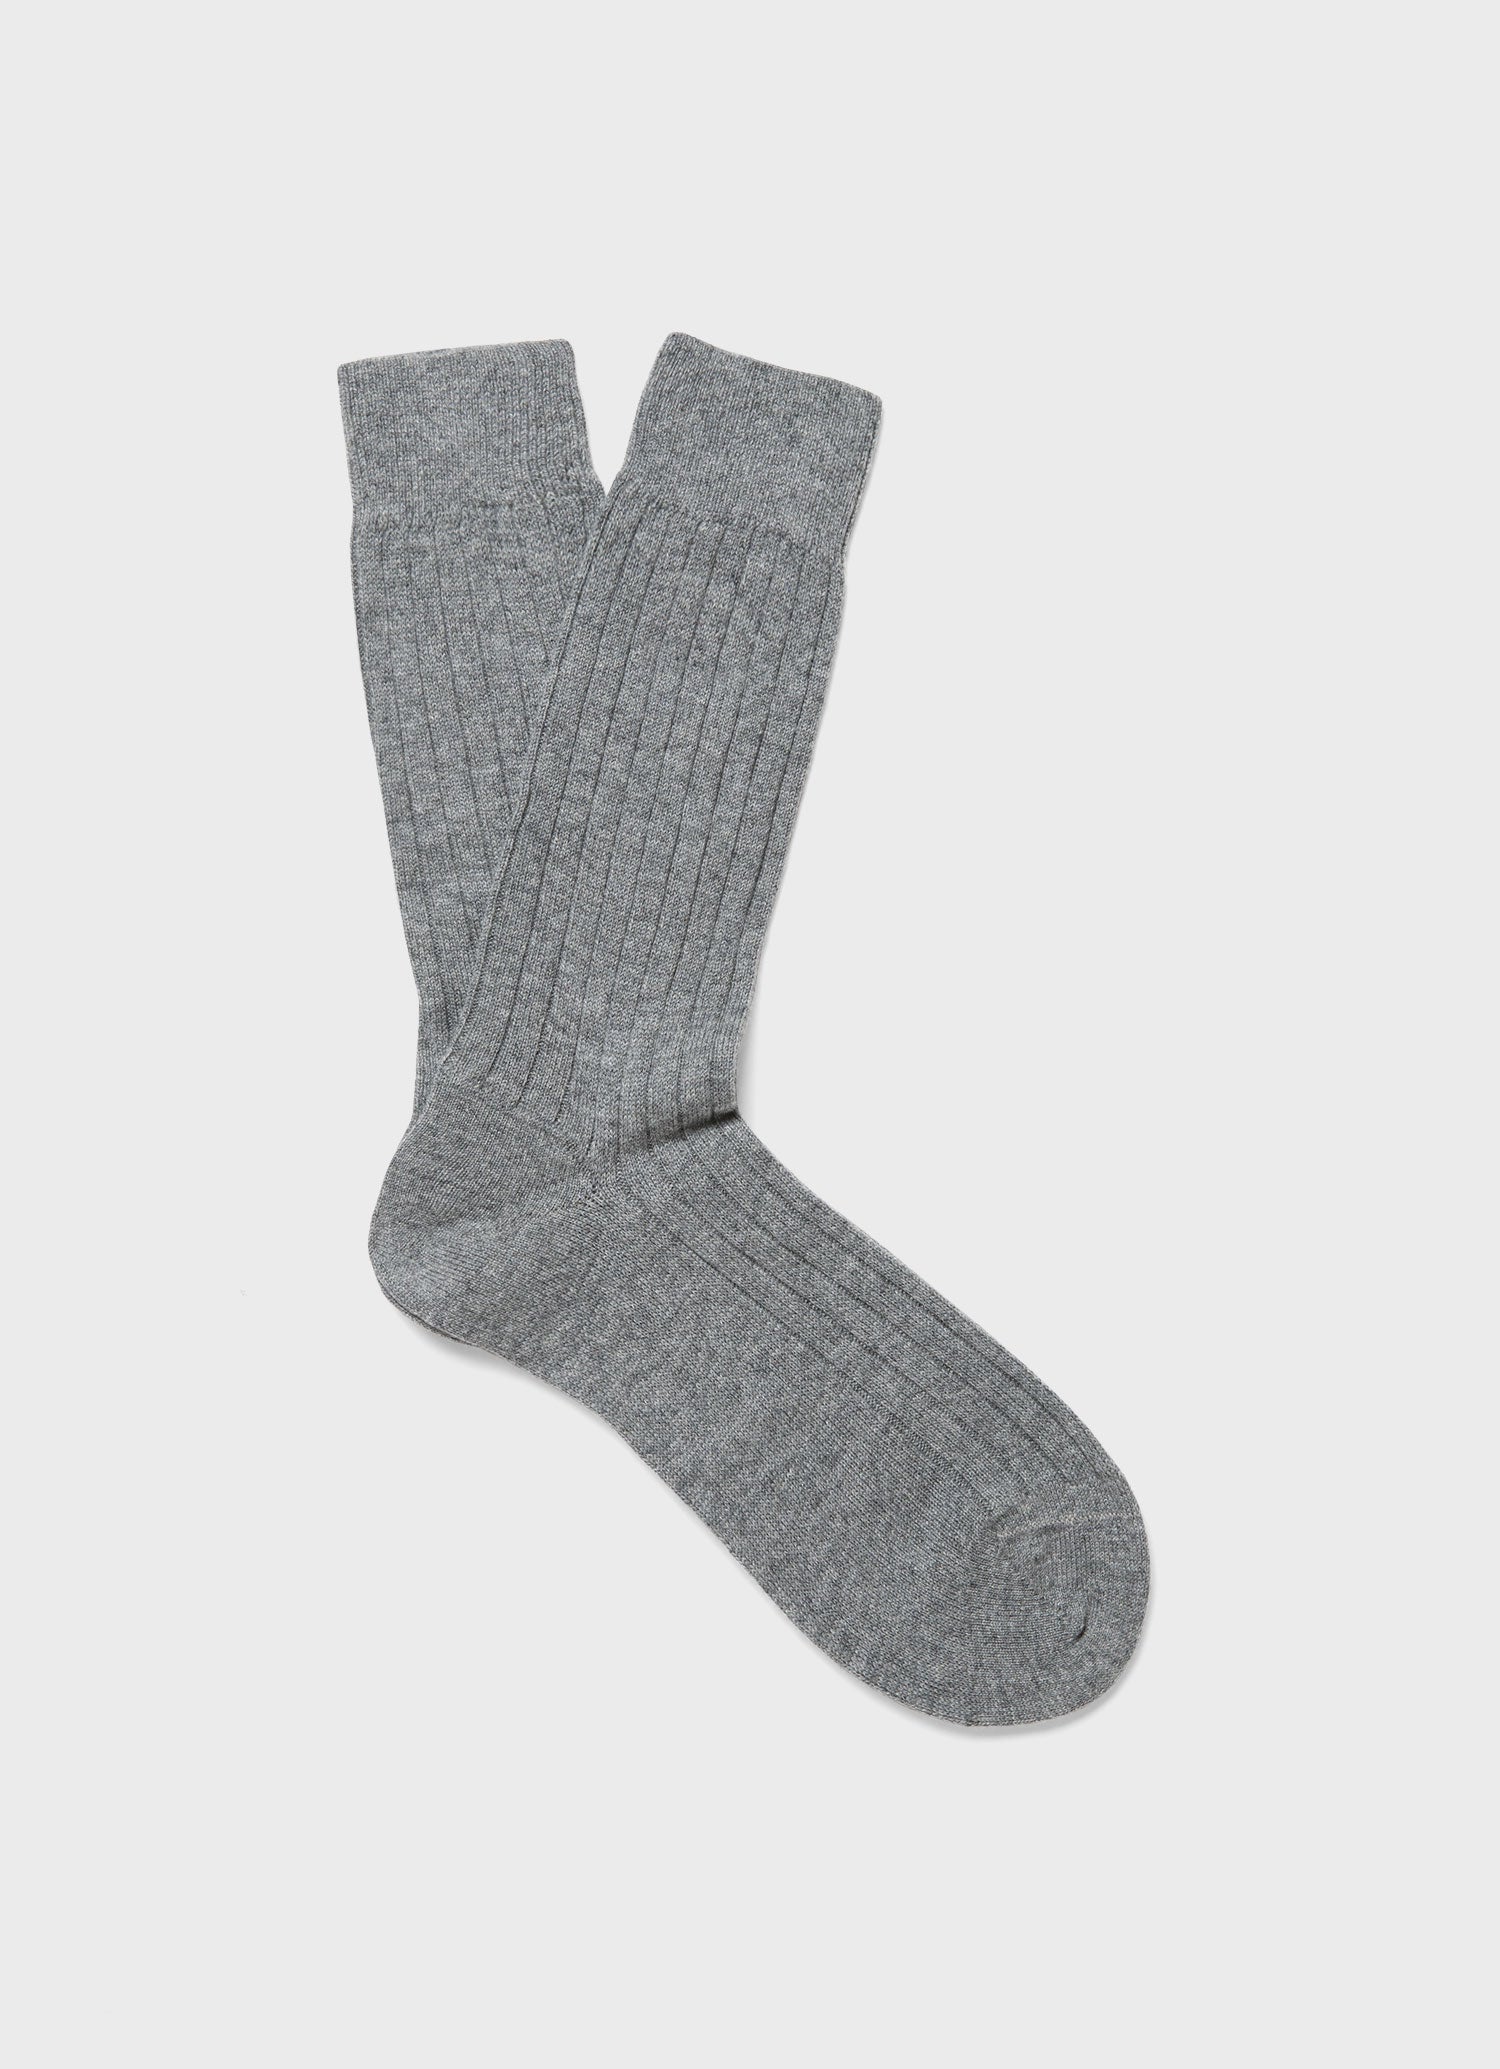 Men's Cashmere Ribbed Socks in Mid Grey Melange | Sunspel